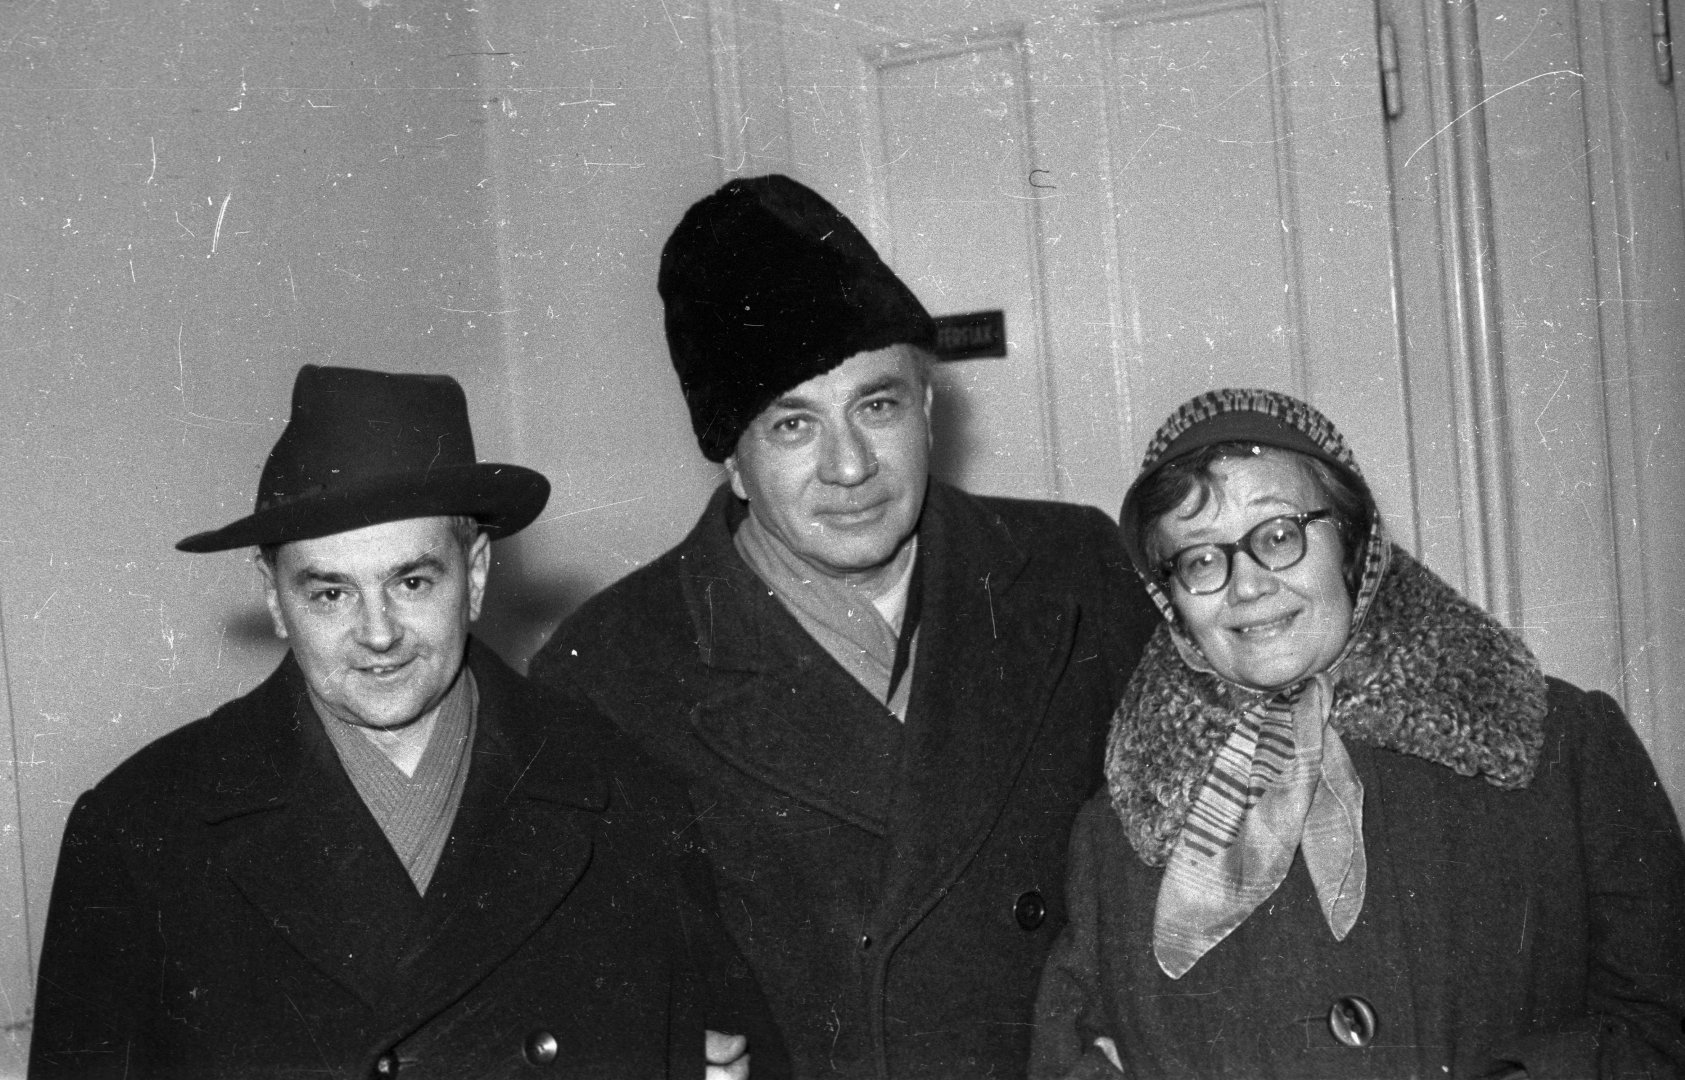 Weöres Sándor, Illyés Gyula és Károlyi Amy költők, 1965-ben - fotó: Fortepan / Hunyady József